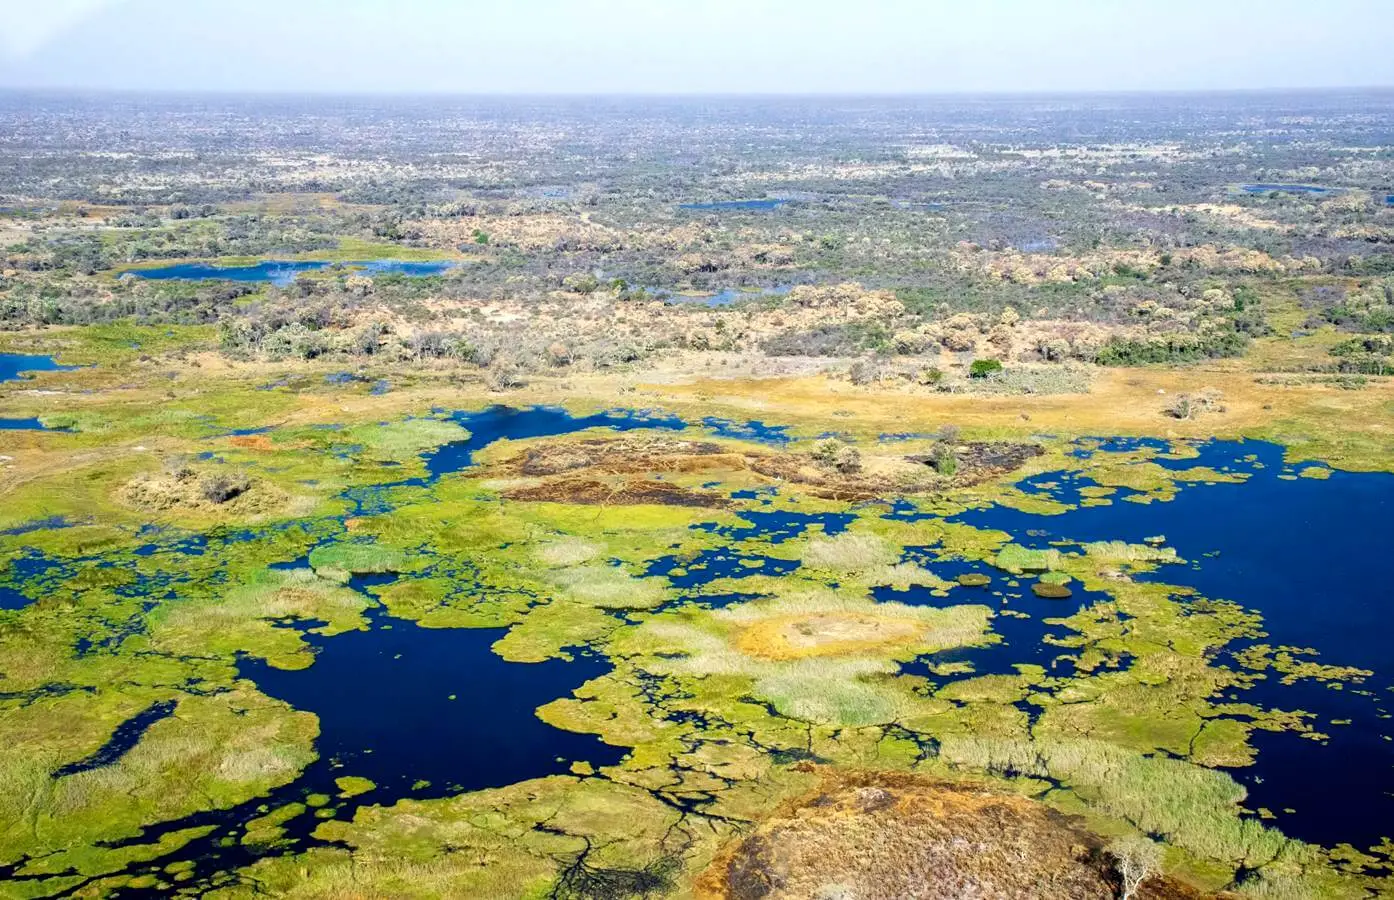 Oris Big Crown ProPilot Okavango Air Rescue Limited Edition - ahoj przygodo!